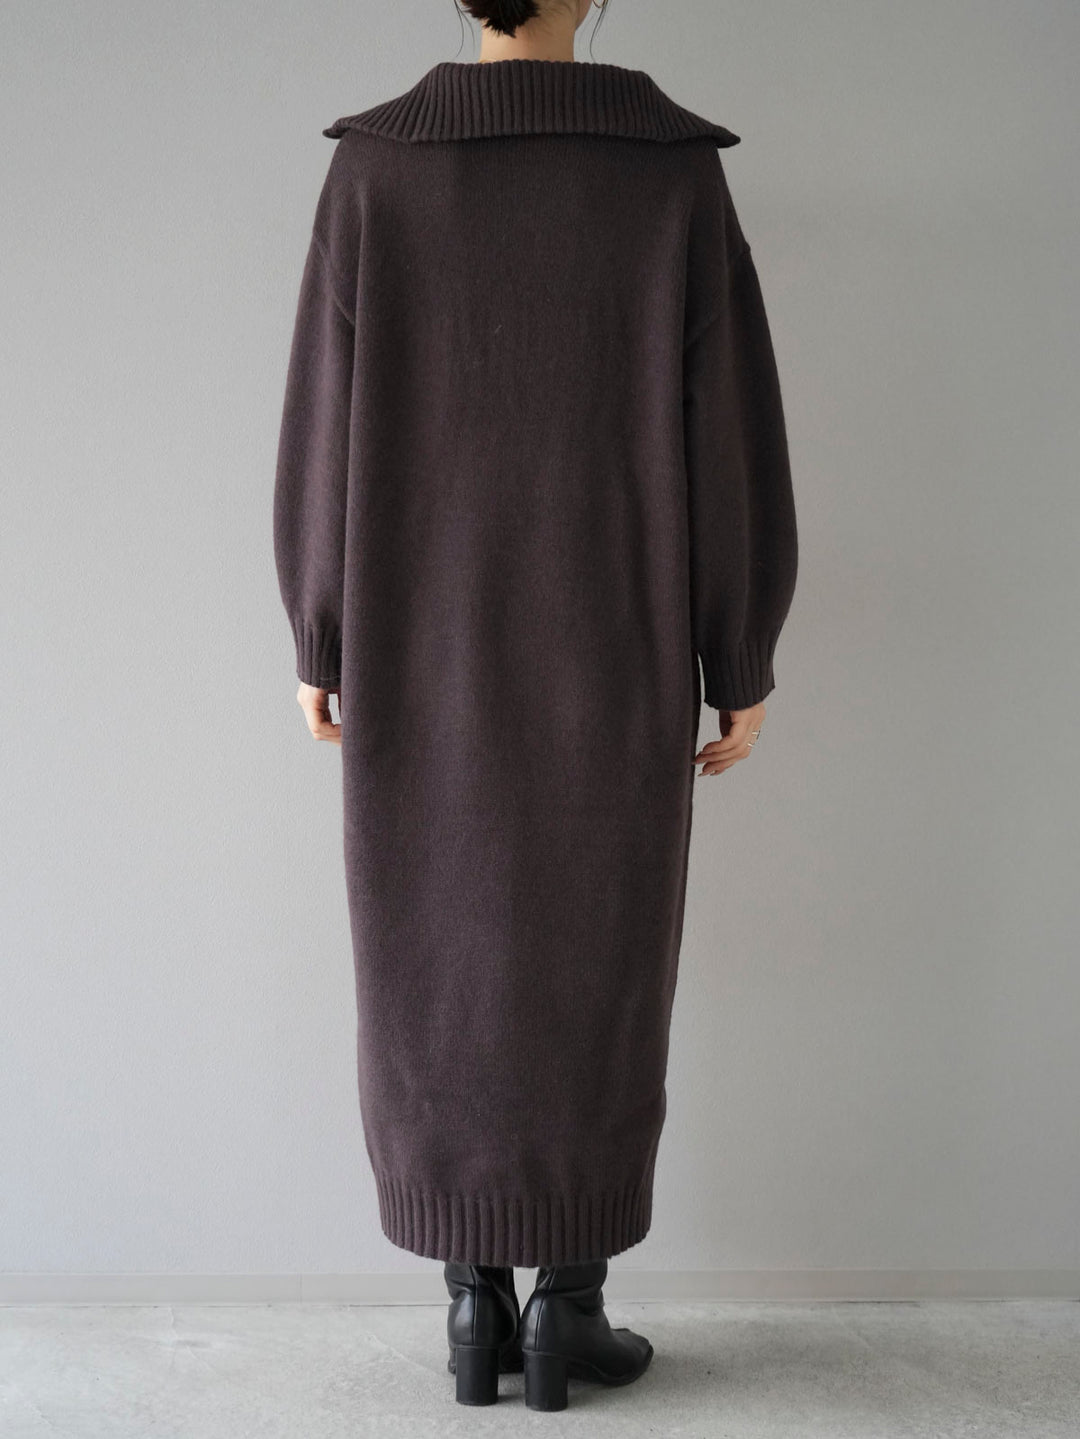 High neck zip knit dress/brown